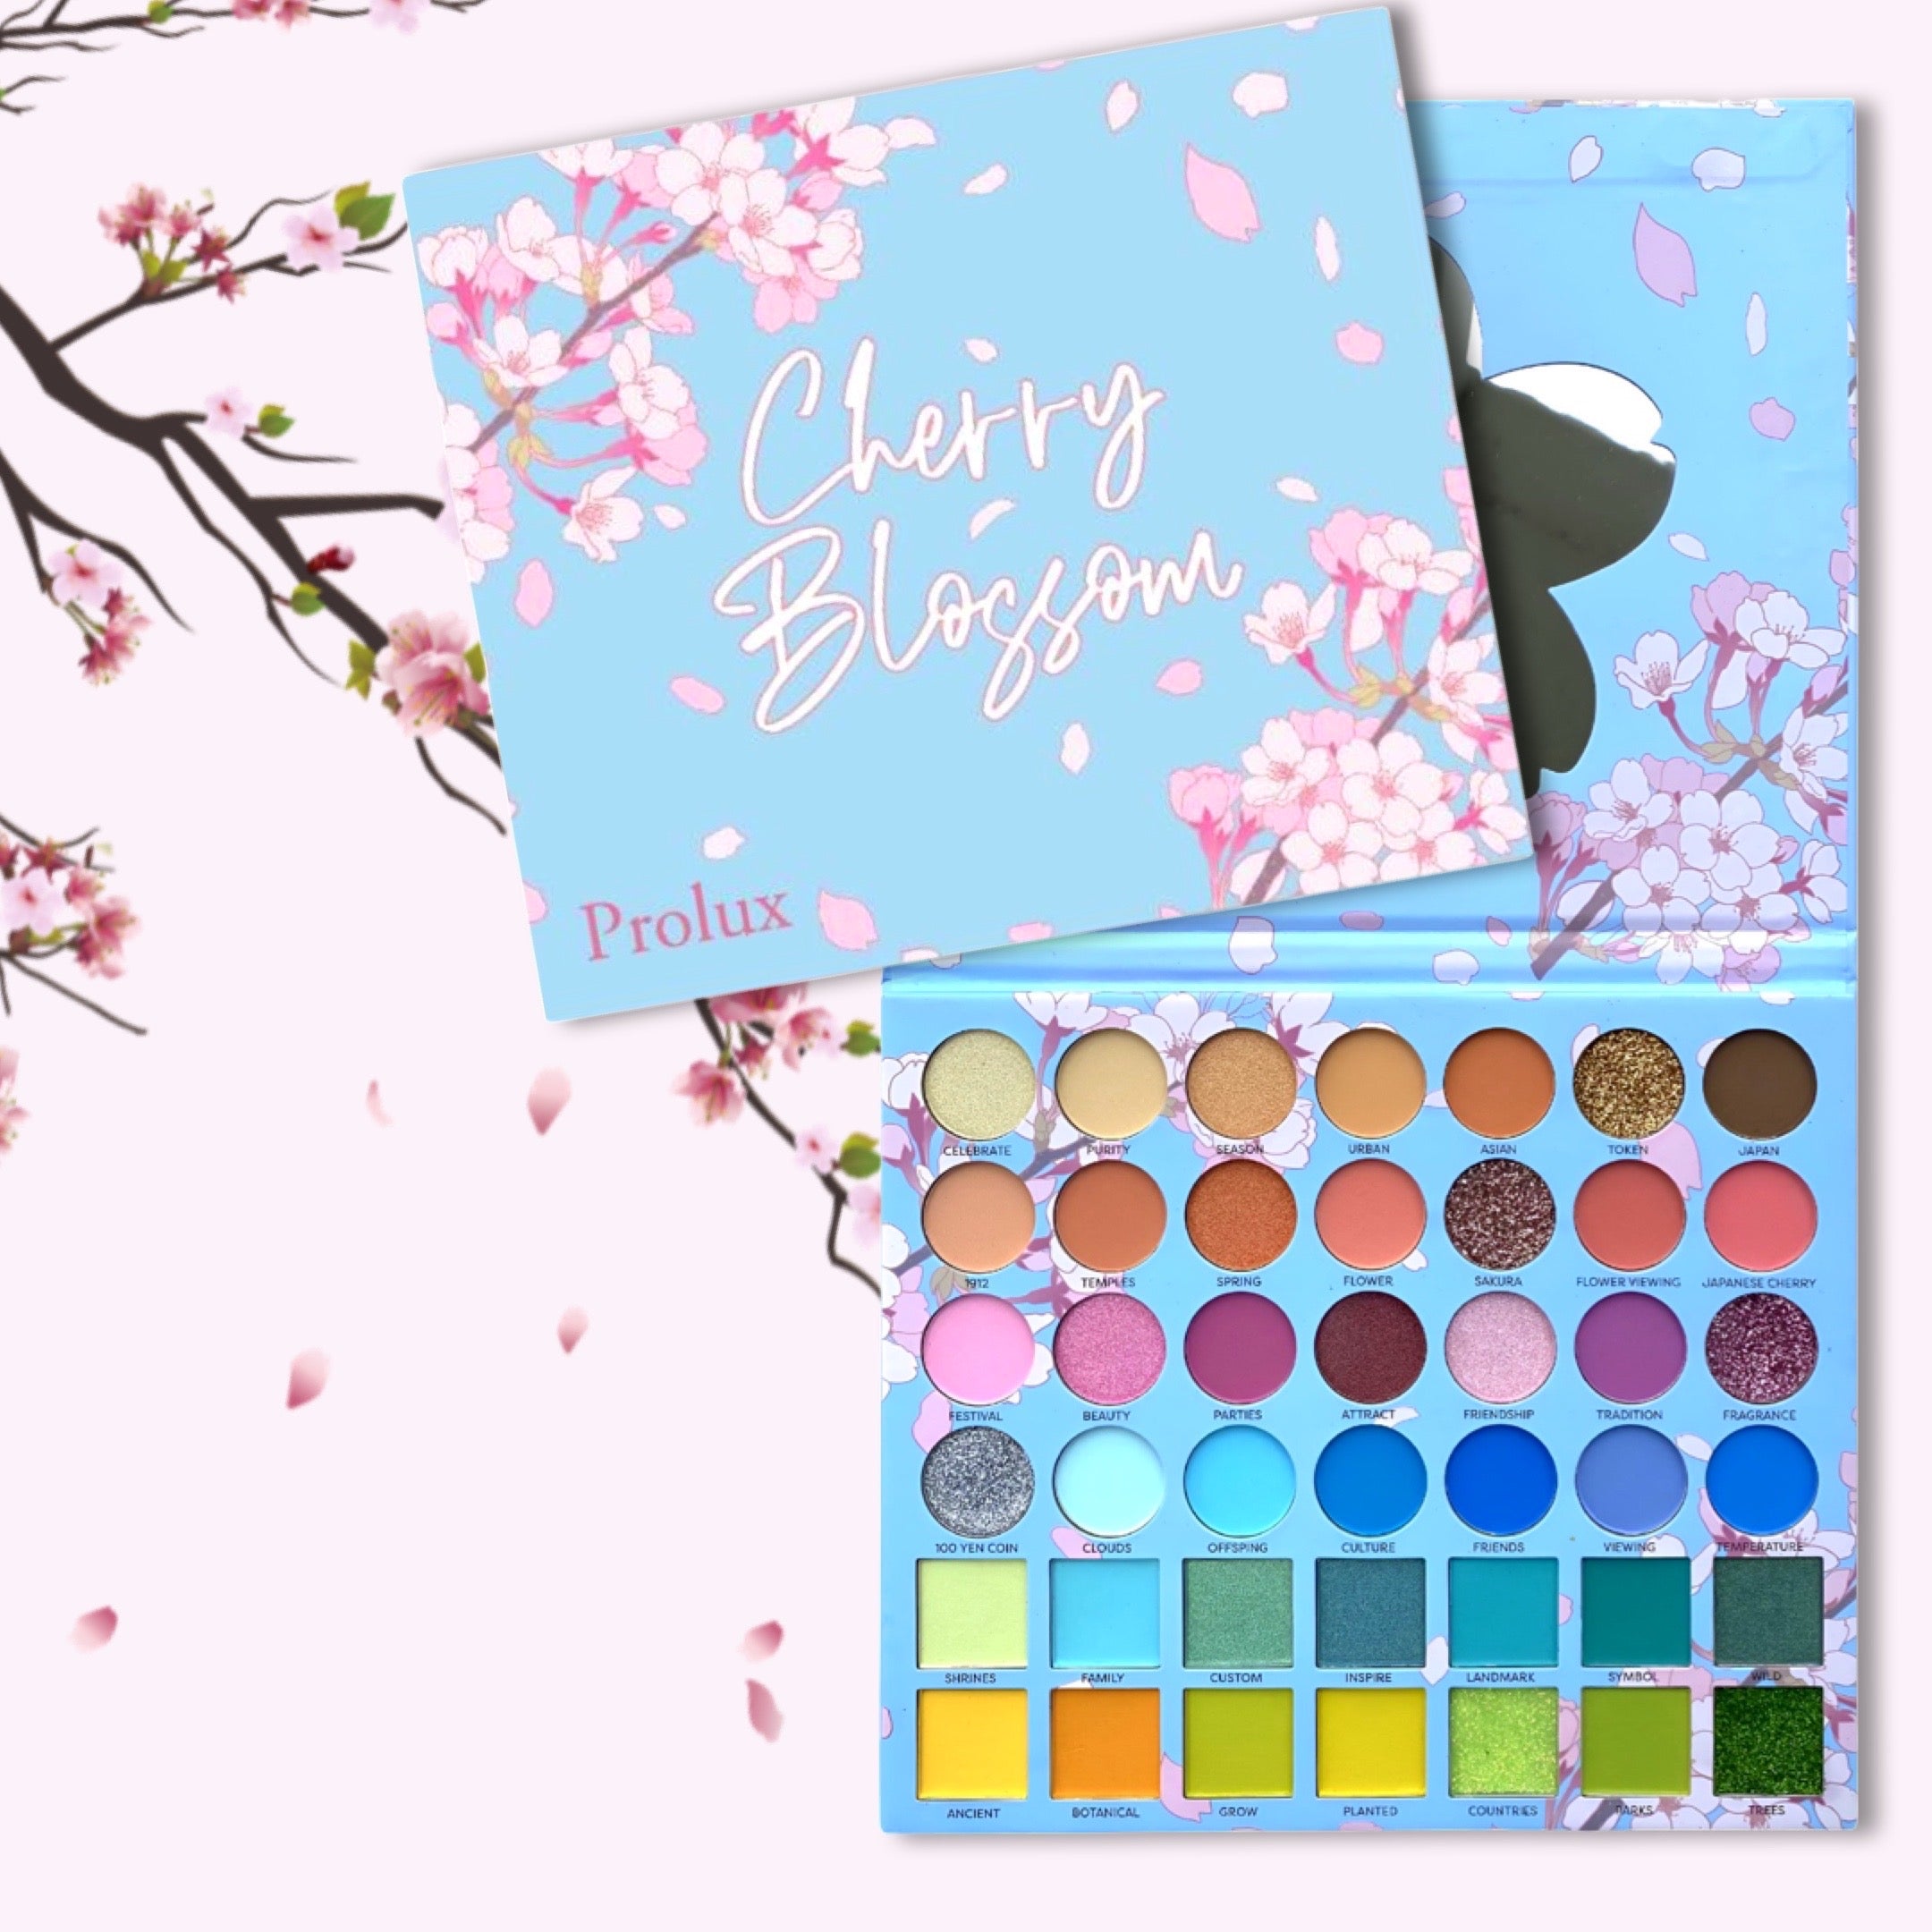 Cherry Blossom Eyeshadow Palette